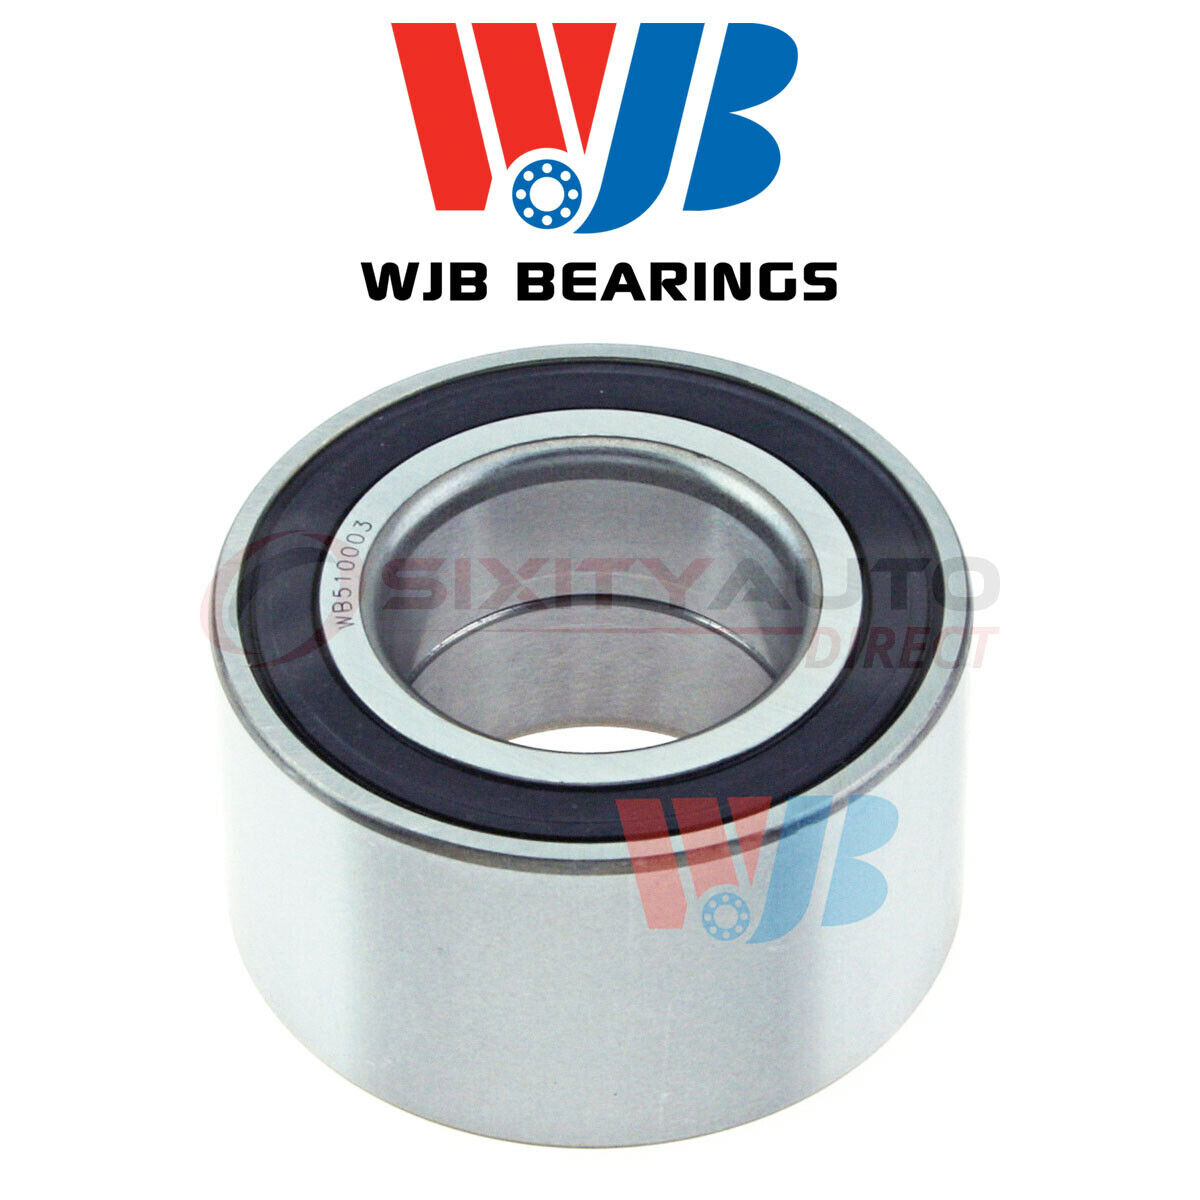 WJB Wheel Bearing for 1992-1996 Mazda MX-3 1.6L 1.8L L4 V6 - Axle Hub Tire bd